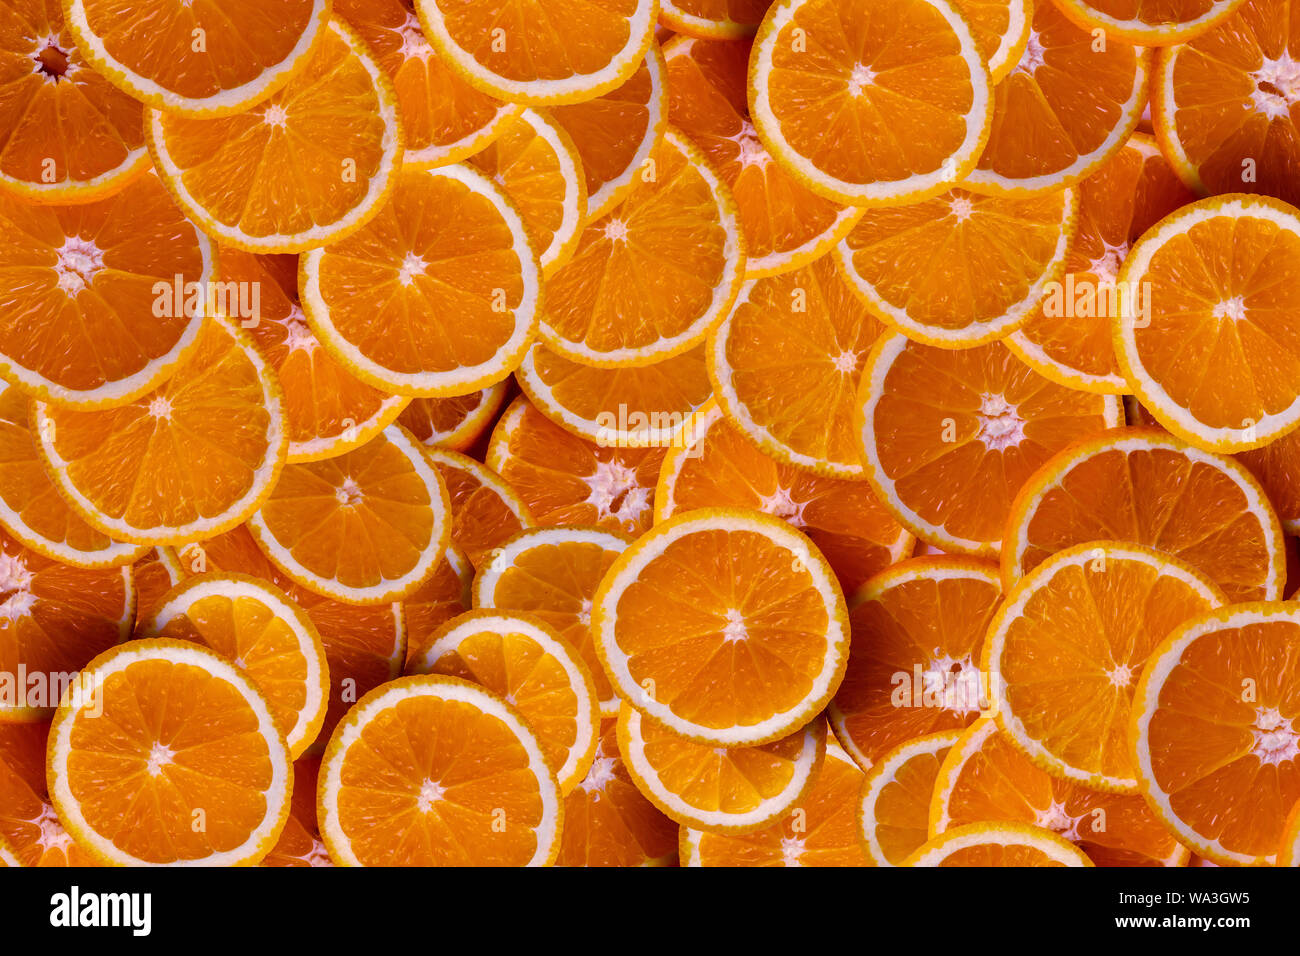 Frutas de naranja de fotograma completo y la textura de fondo. El resultado es agridulce o dulce. Contiene calcio, potasio, vitamina A y C. Foto de stock